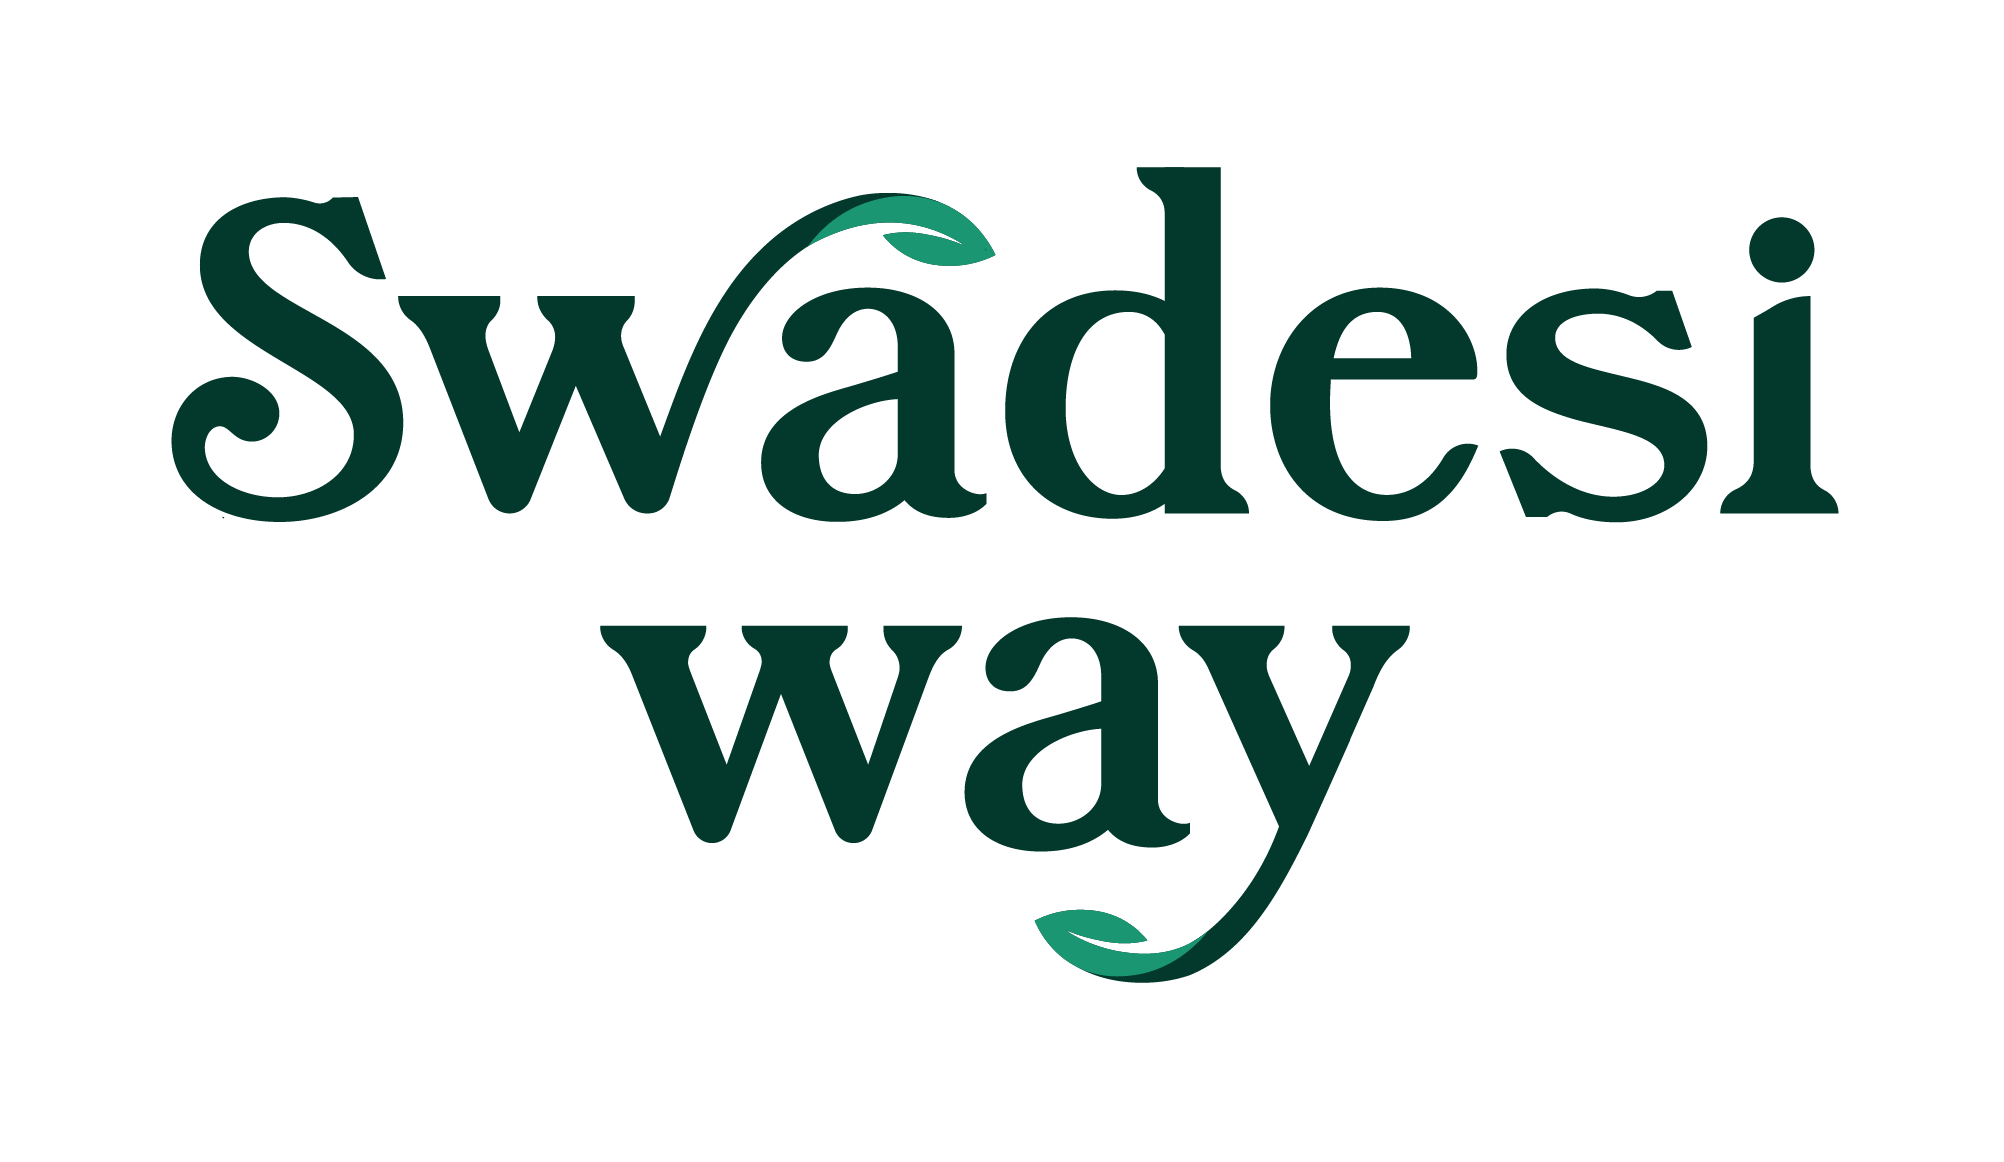 Swadesi Way